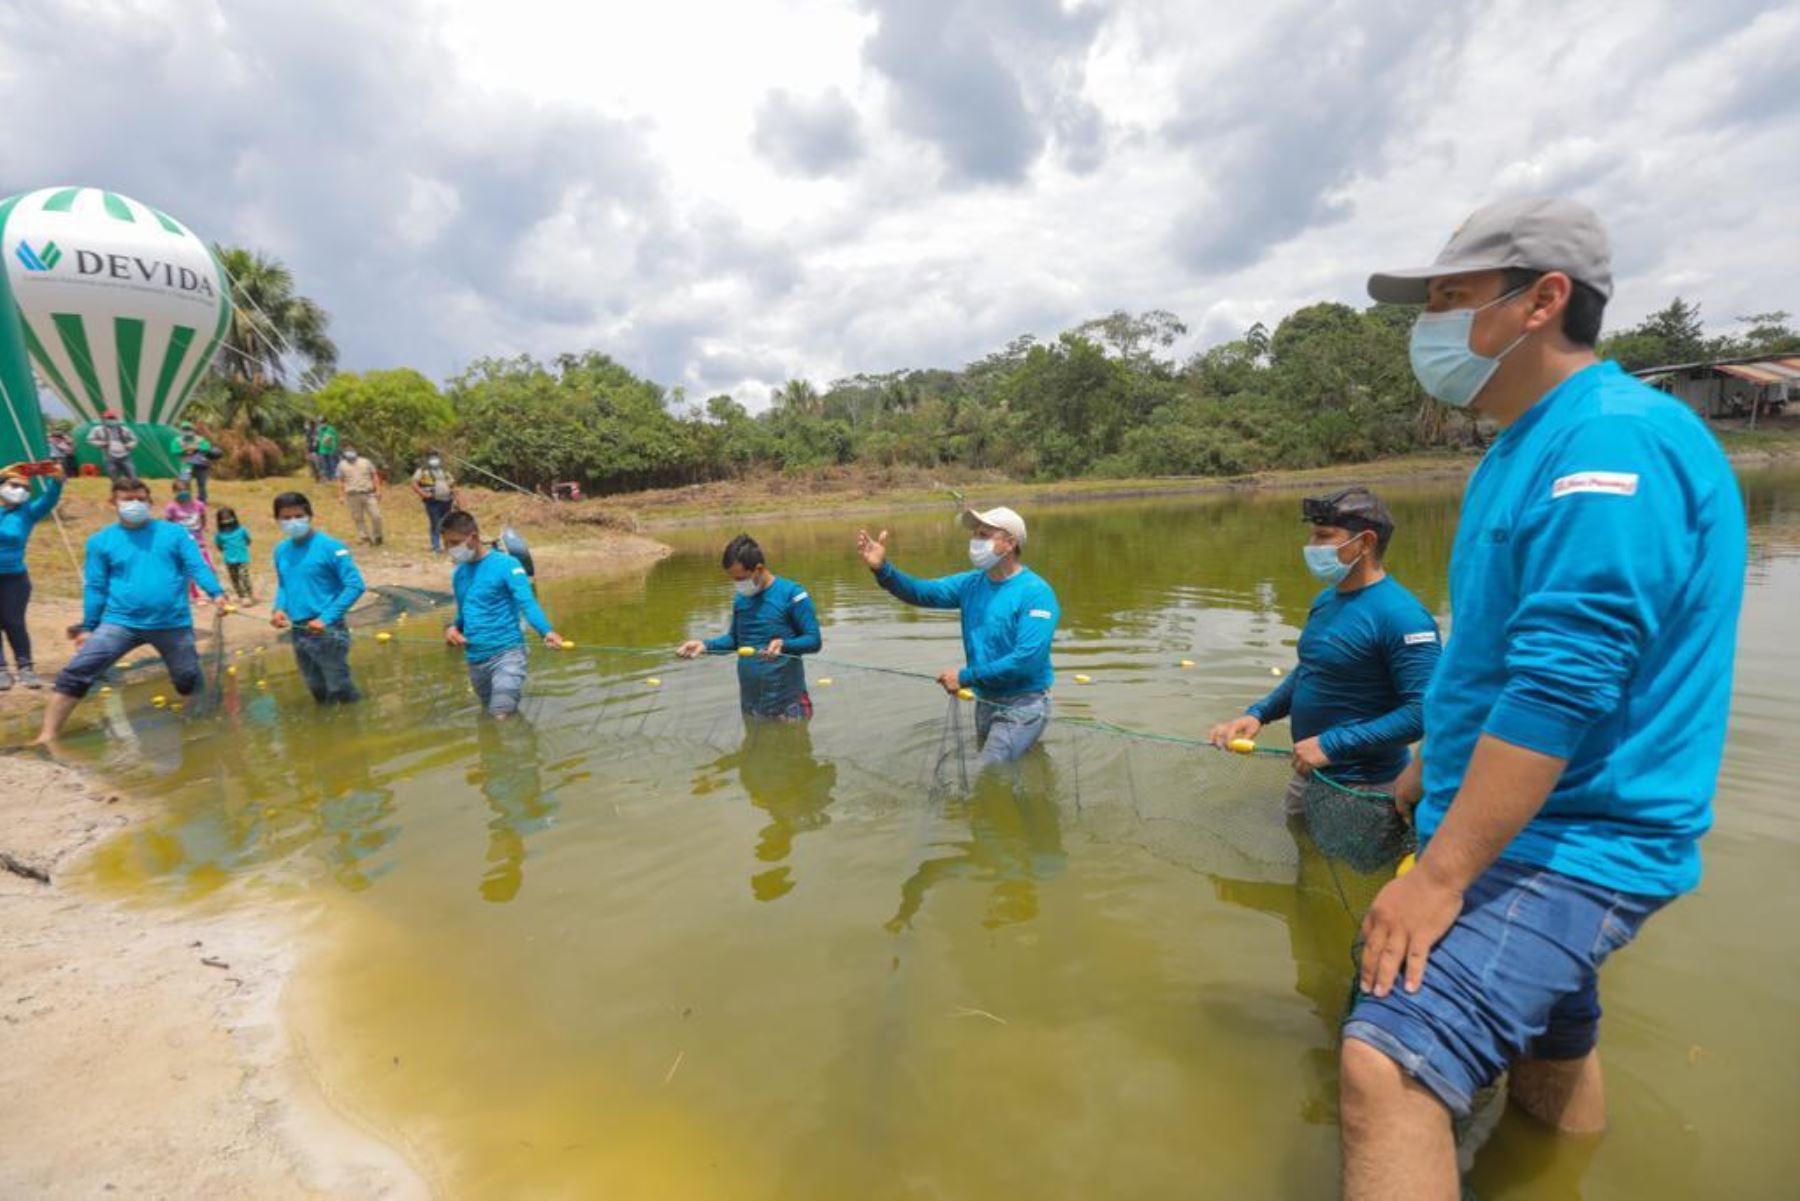 Las actividades acuícolas son financiadas por Devida, a través de los mencionados gobiernos locales, con casi 2 millones de soles. Se han implementado 70 módulos para producir 60 mil kilos de peces amazónicos por campaña. Foto: Devida